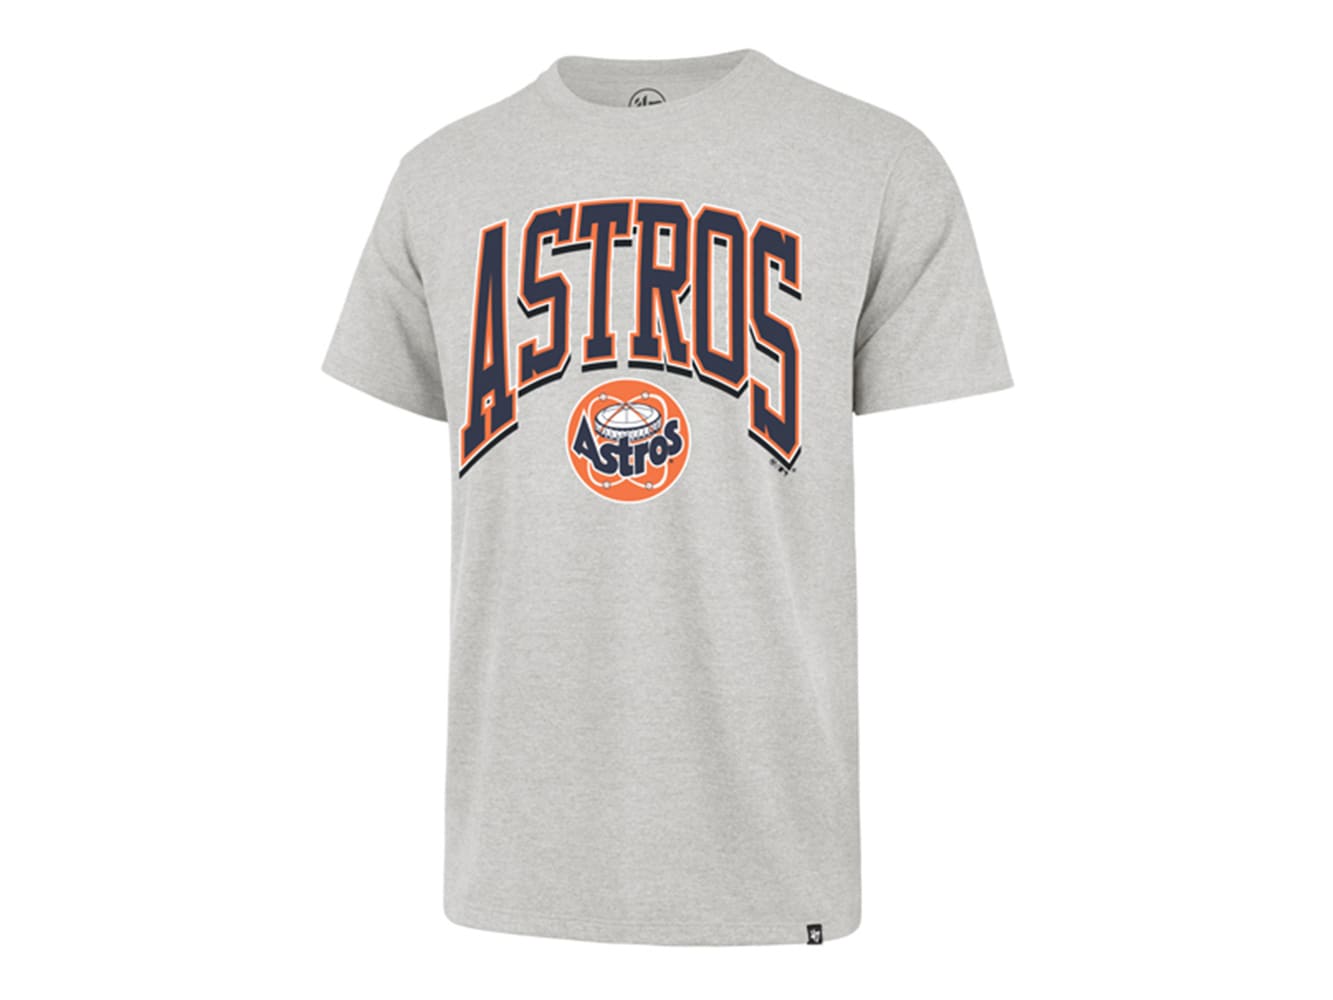 Houston Astros Baseball t Shirt SR01  Baseball tshirts, Houston astros  baseball, Houston astros shirts